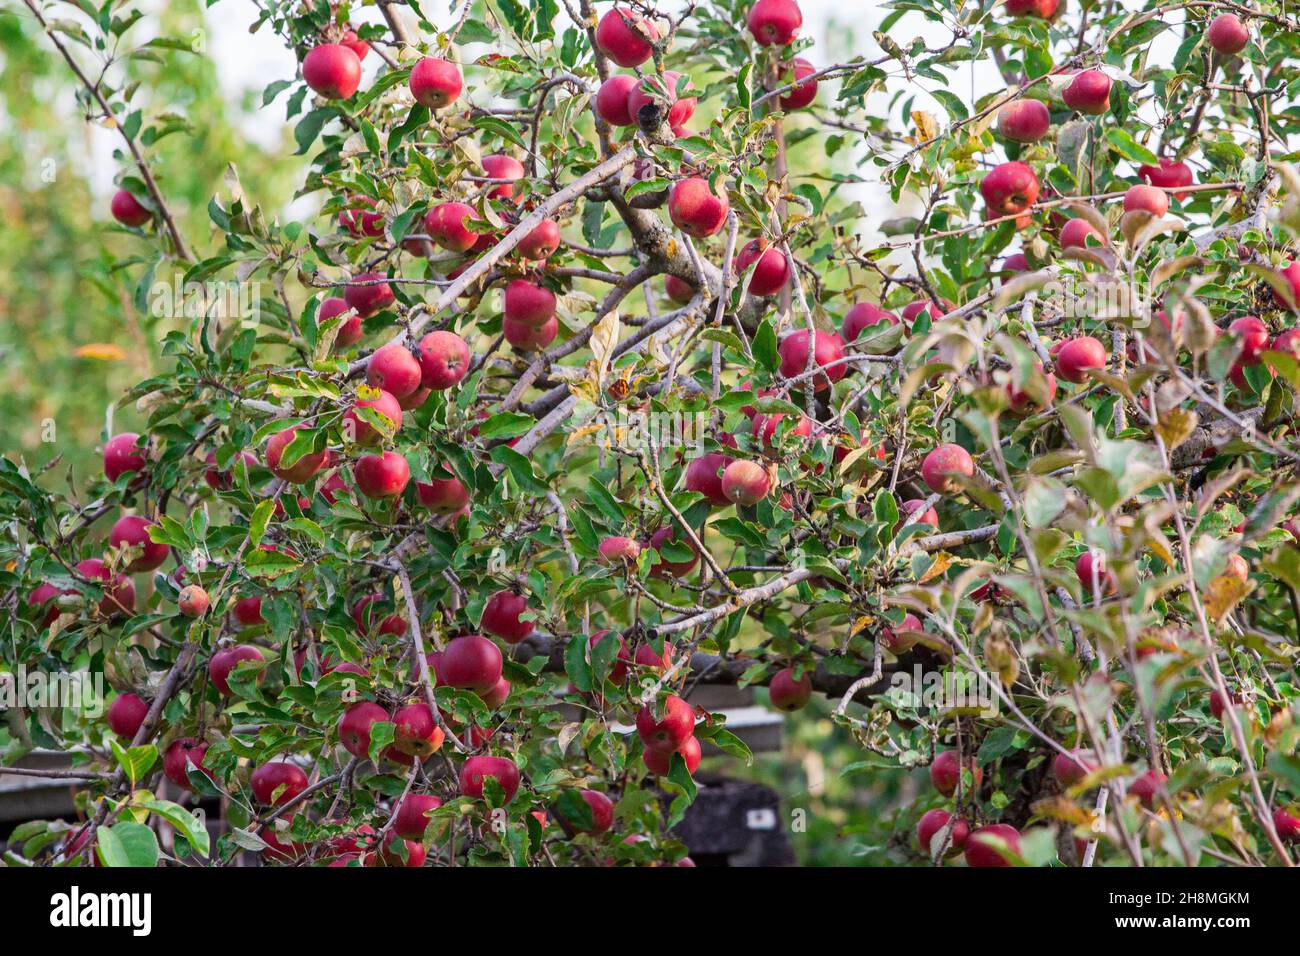 rama de manzano con muchos frutos grandes maduros de pera dulce en el jardín del granjero. Manzanas RIPE Rojas cubiertas con gotas de lluvia Foto de stock